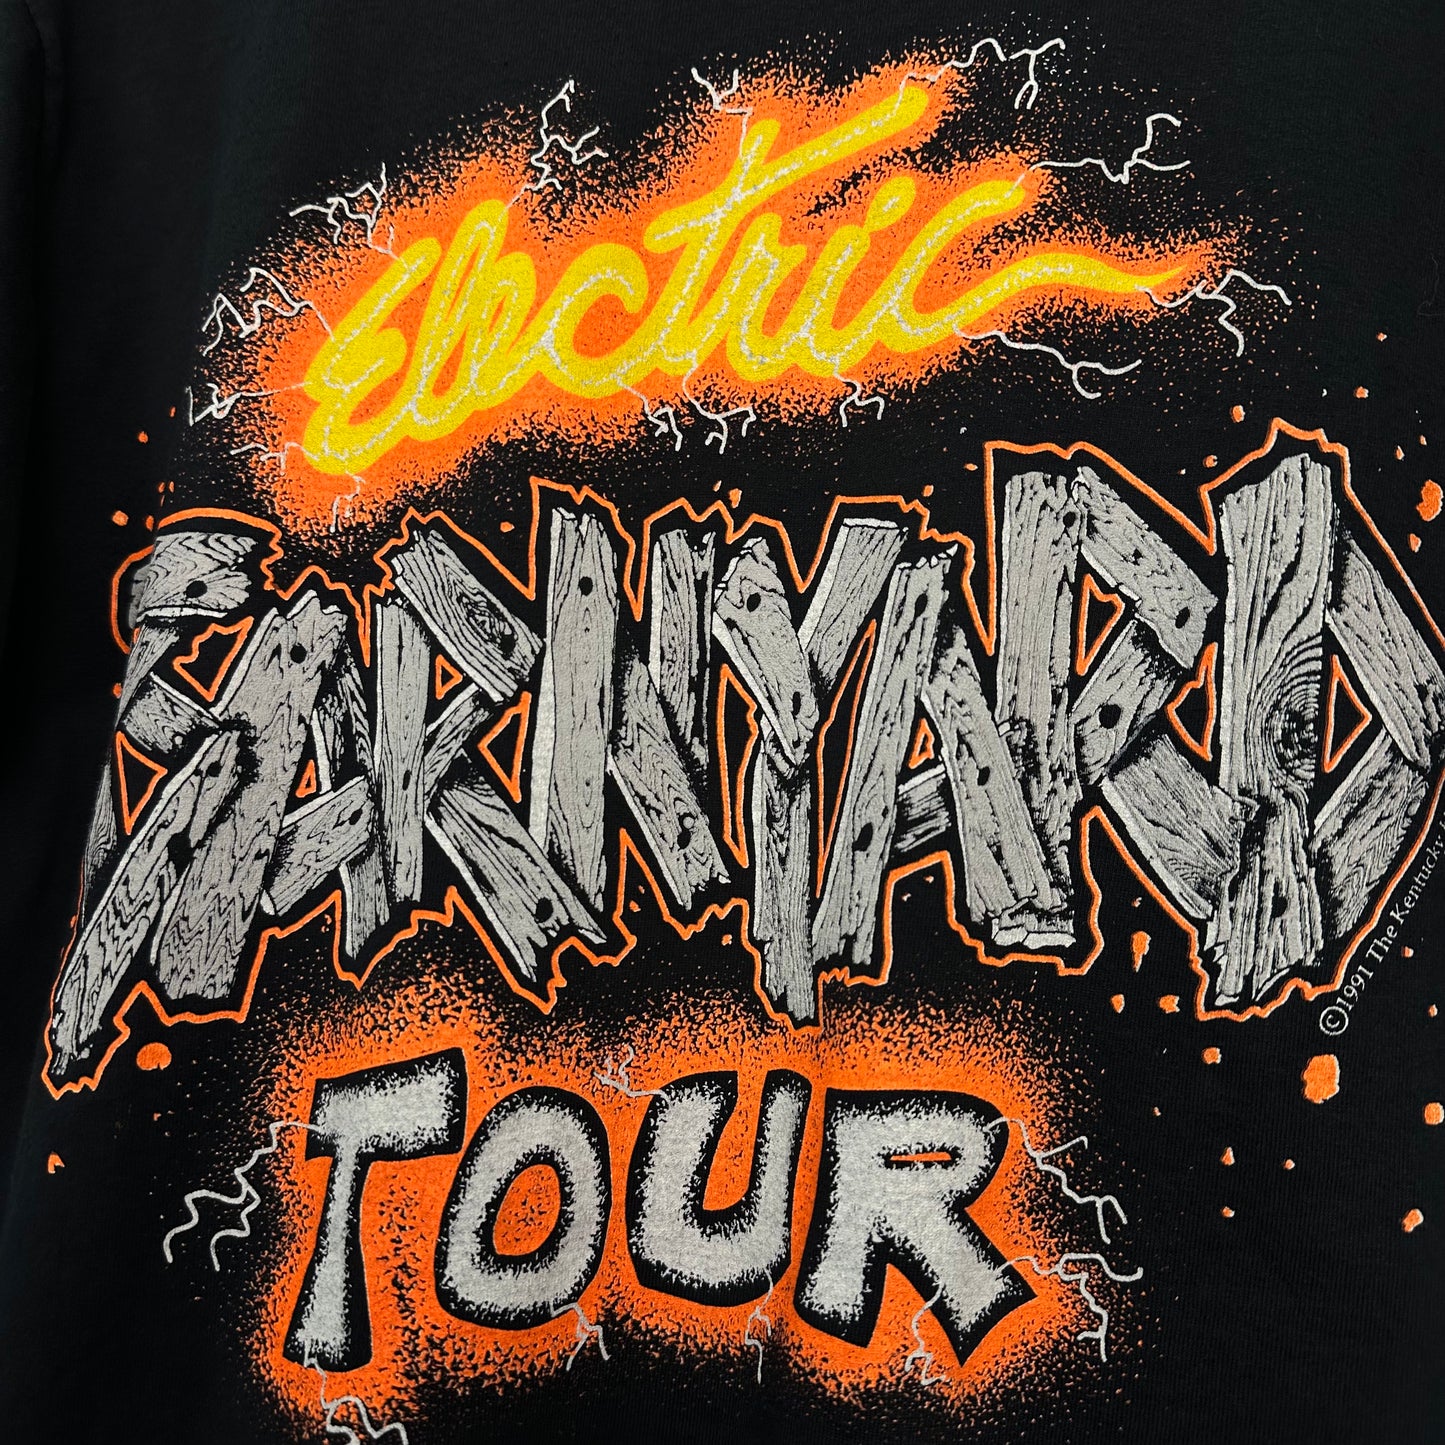 1991 The Kentucky Headhunters Electric Banyard Tour Shirt - L